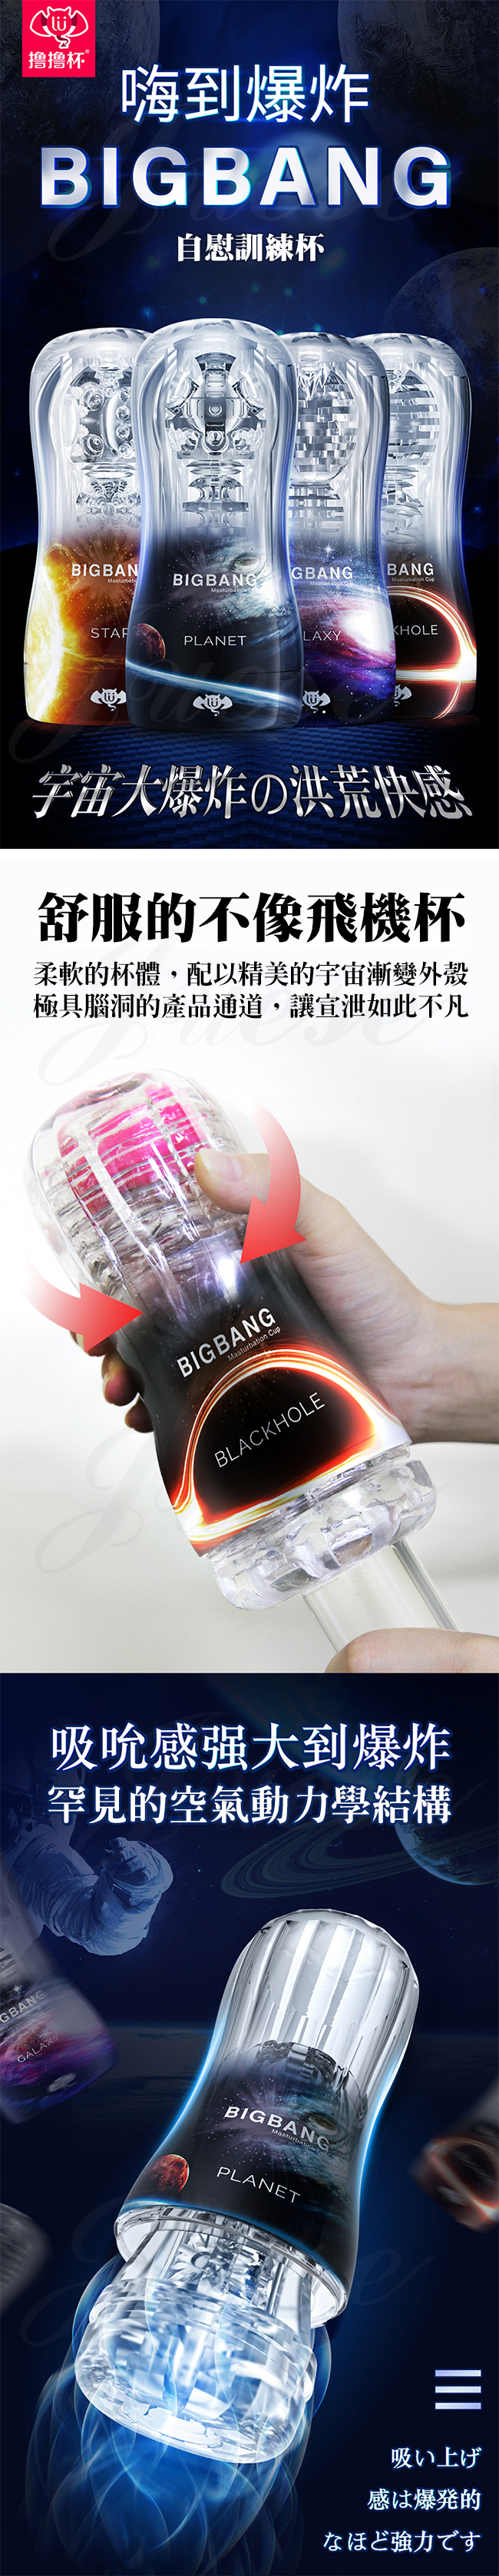 香港久興-擼擼杯 BIGBANG 紅丸鍛鍊龜頭刺激自慰杯-GALAXY 星系